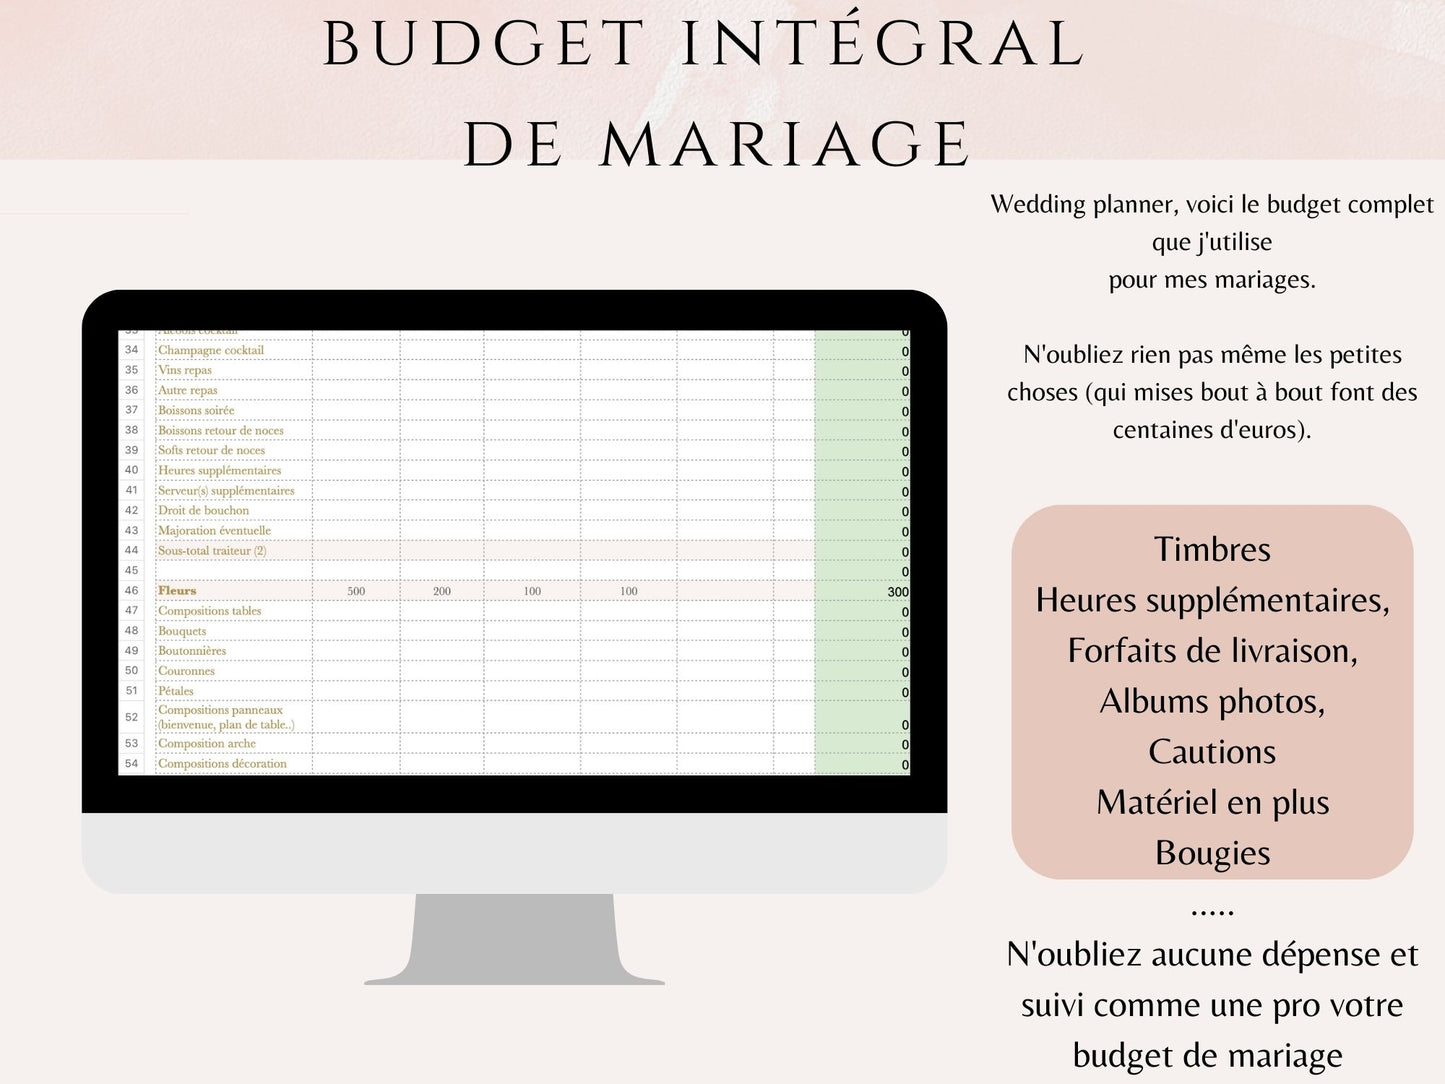 Budget de mariage complet - 190 postes